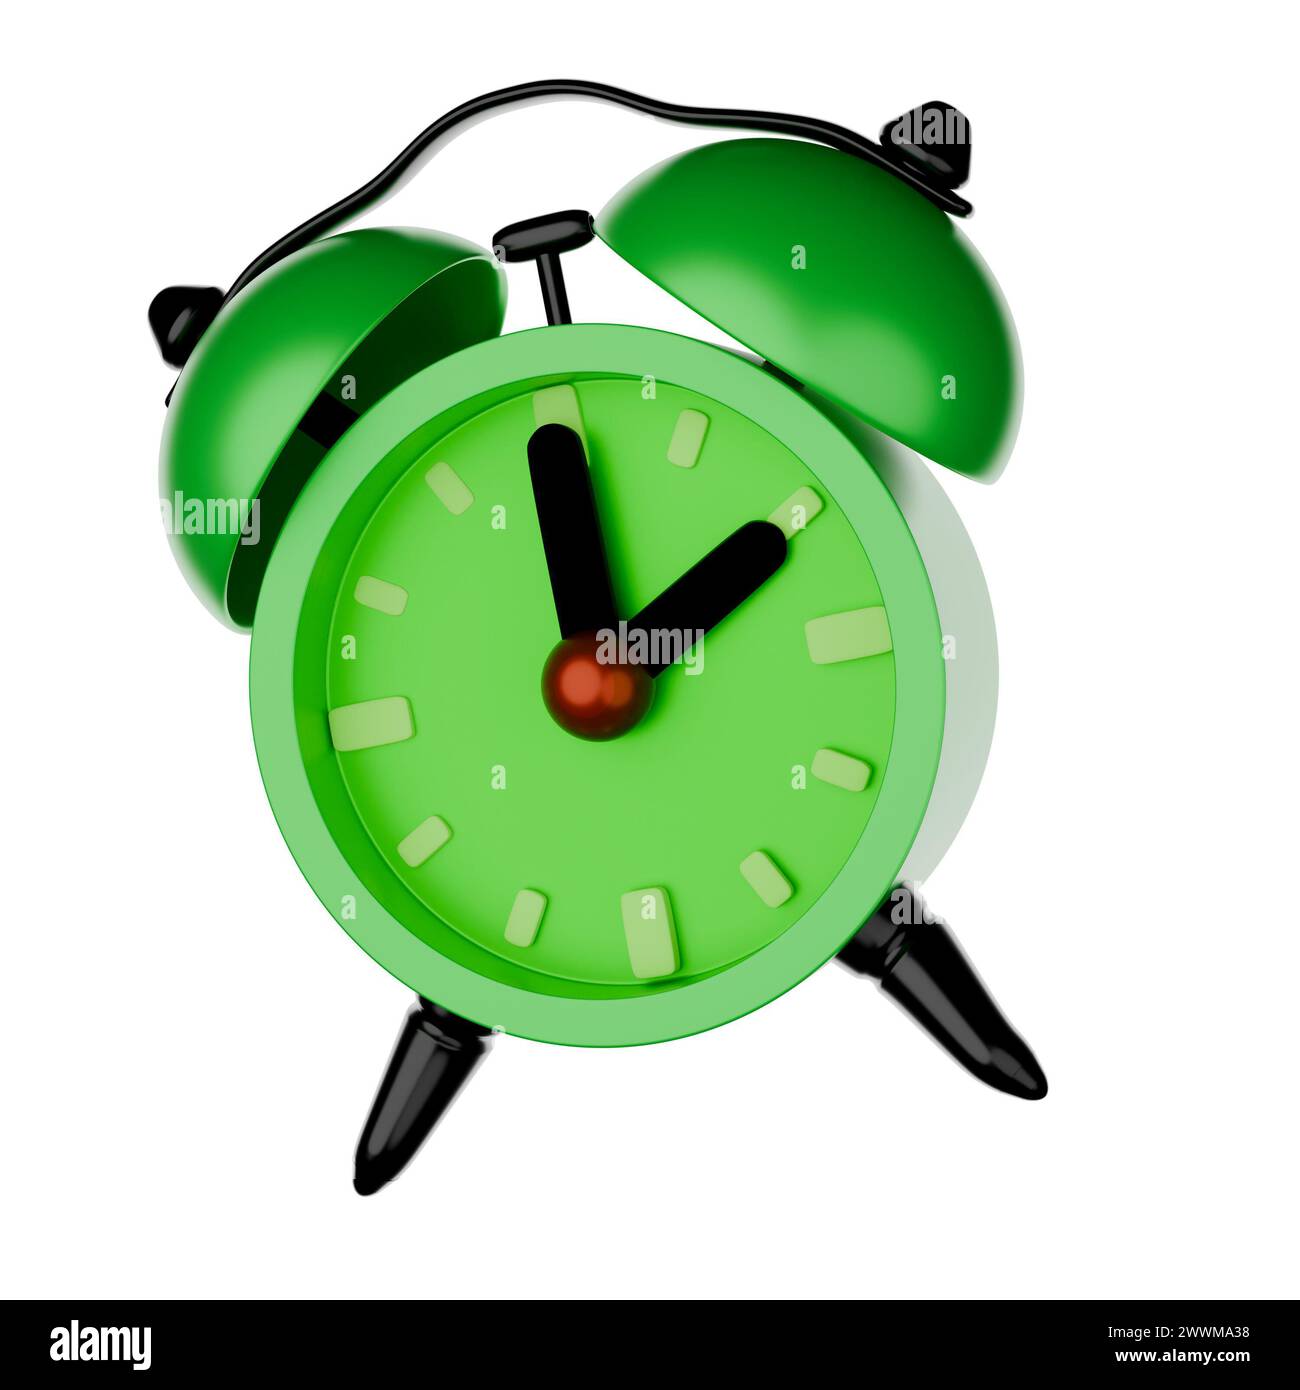 Grüner Wecker, Zeichentrickstil, 3D-Rendering auf weißem Hintergrund haben Arbeitspfad. Zeit 2 Uhr. Stockfoto